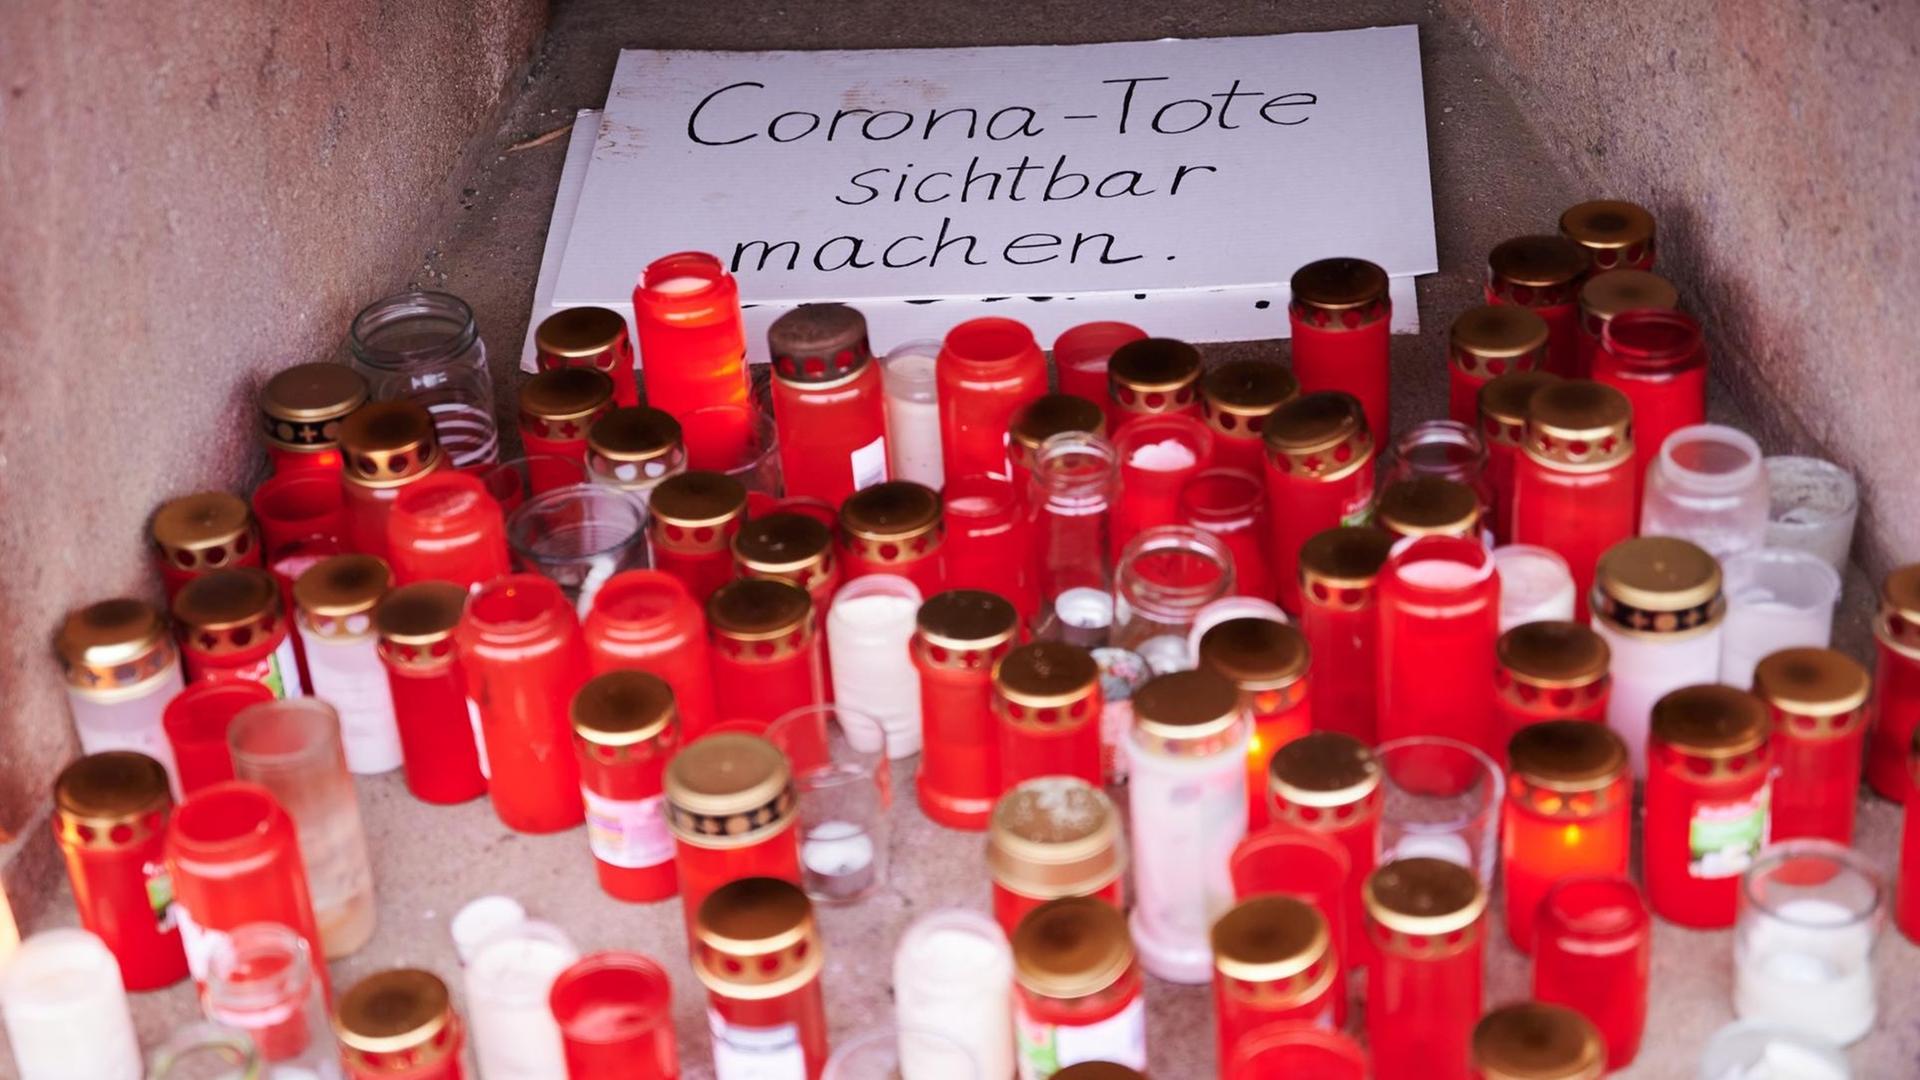 "Corona-Tote sichtbar machen" steht auf einem Karton, der von Totenlämpchen umringt ist. Eine private Initiative erinnert so an die aktuelle Zahl der Corona-Toten.